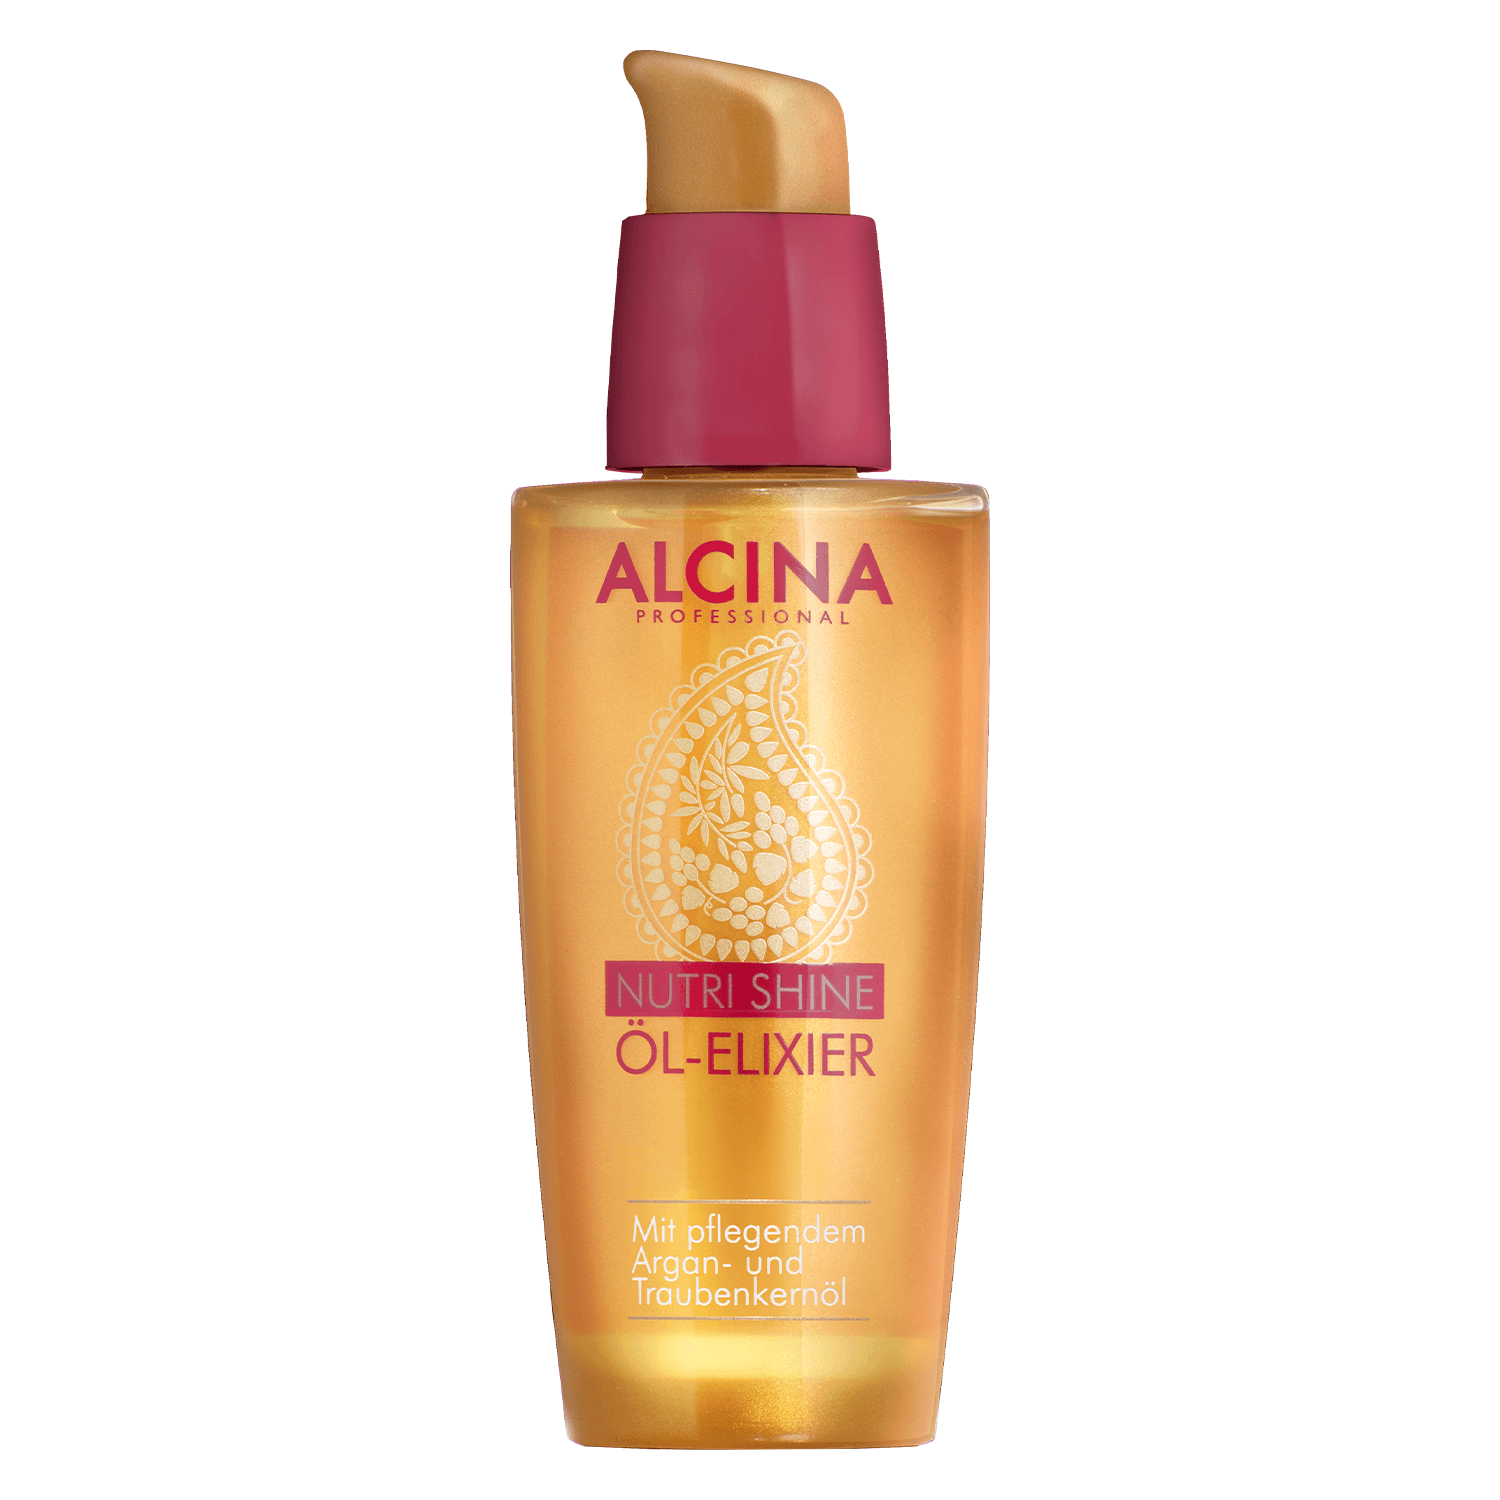 Produktbild von Alcina Nutri Shine - Öl Elixier